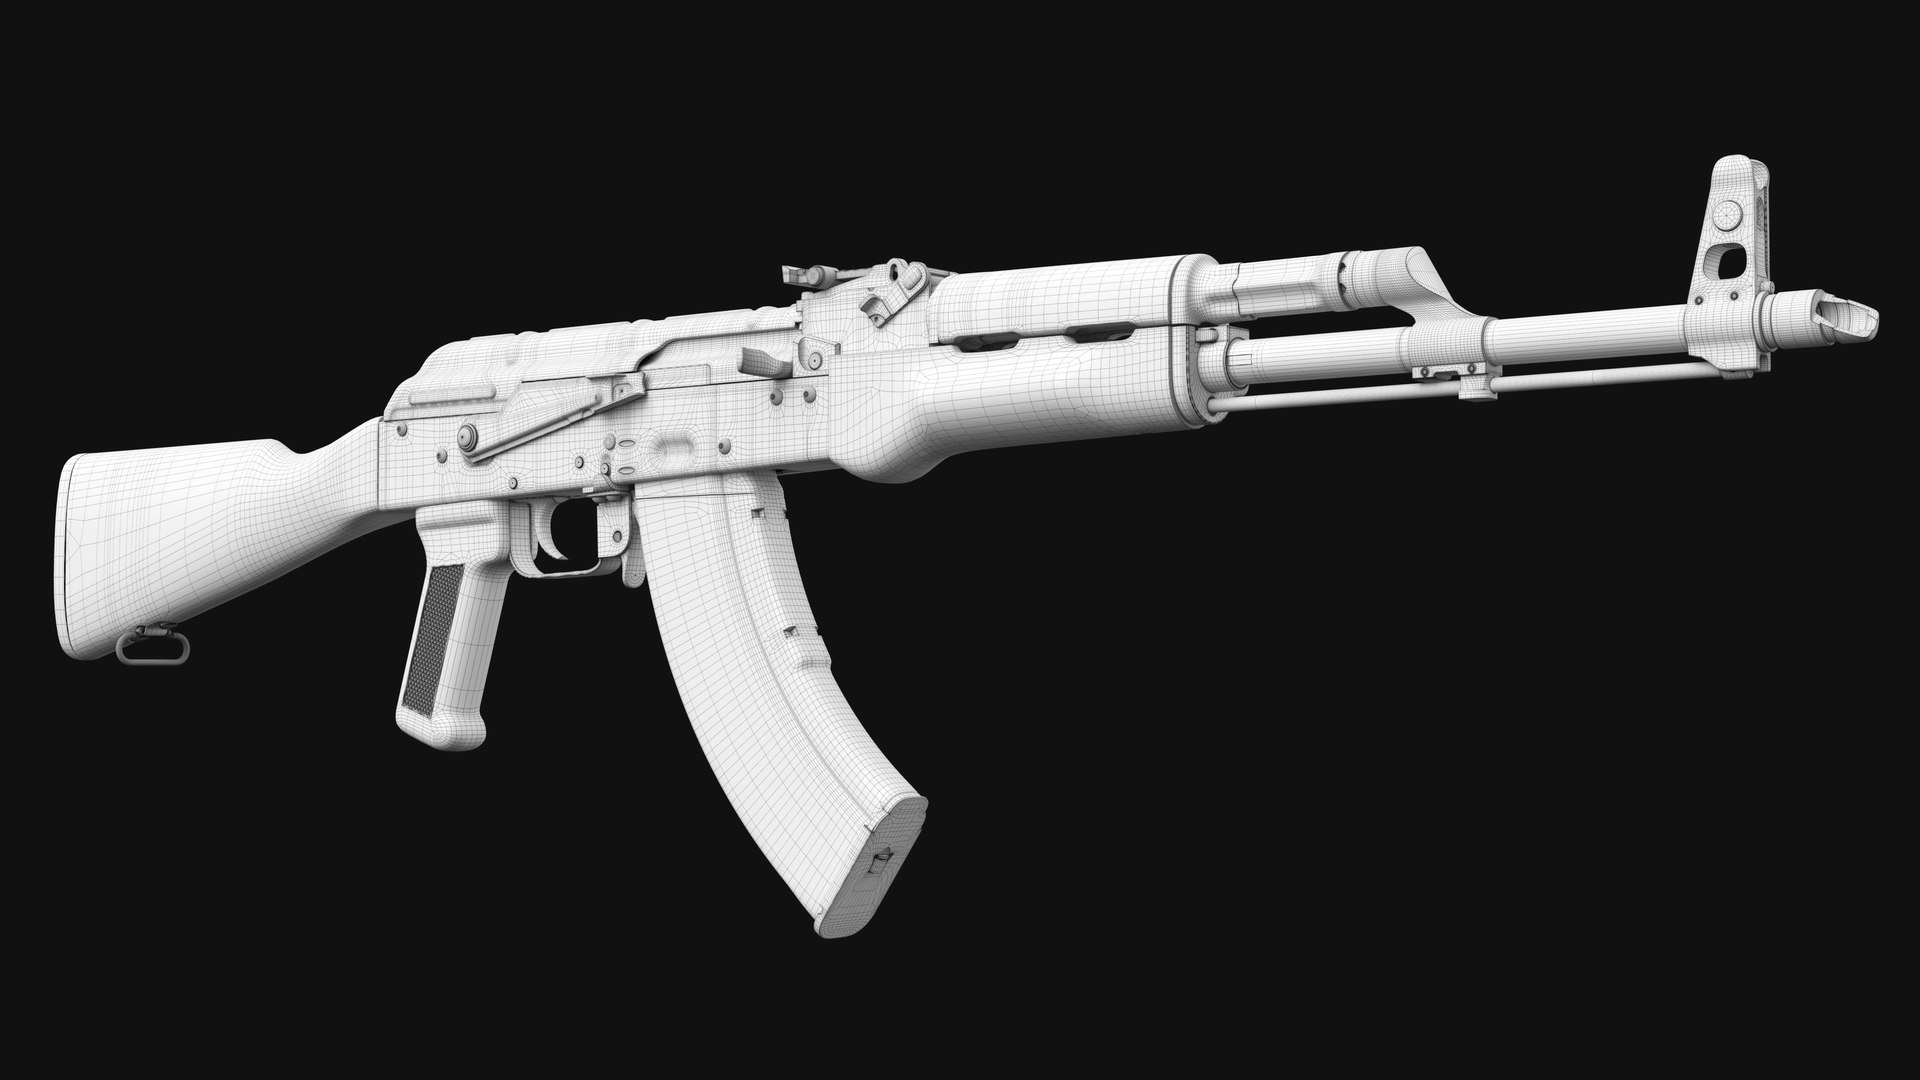 Thiết kế 3D của súng trường AKM cho bạn cái nhìn sâu sắc hơn về cấu trúc, kỹ thuật và tính năng đặc biệt của loại súng này. Bạn sẽ cảm thấy như được chiêm ngưỡng một tác phẩm nghệ thuật thực sự.